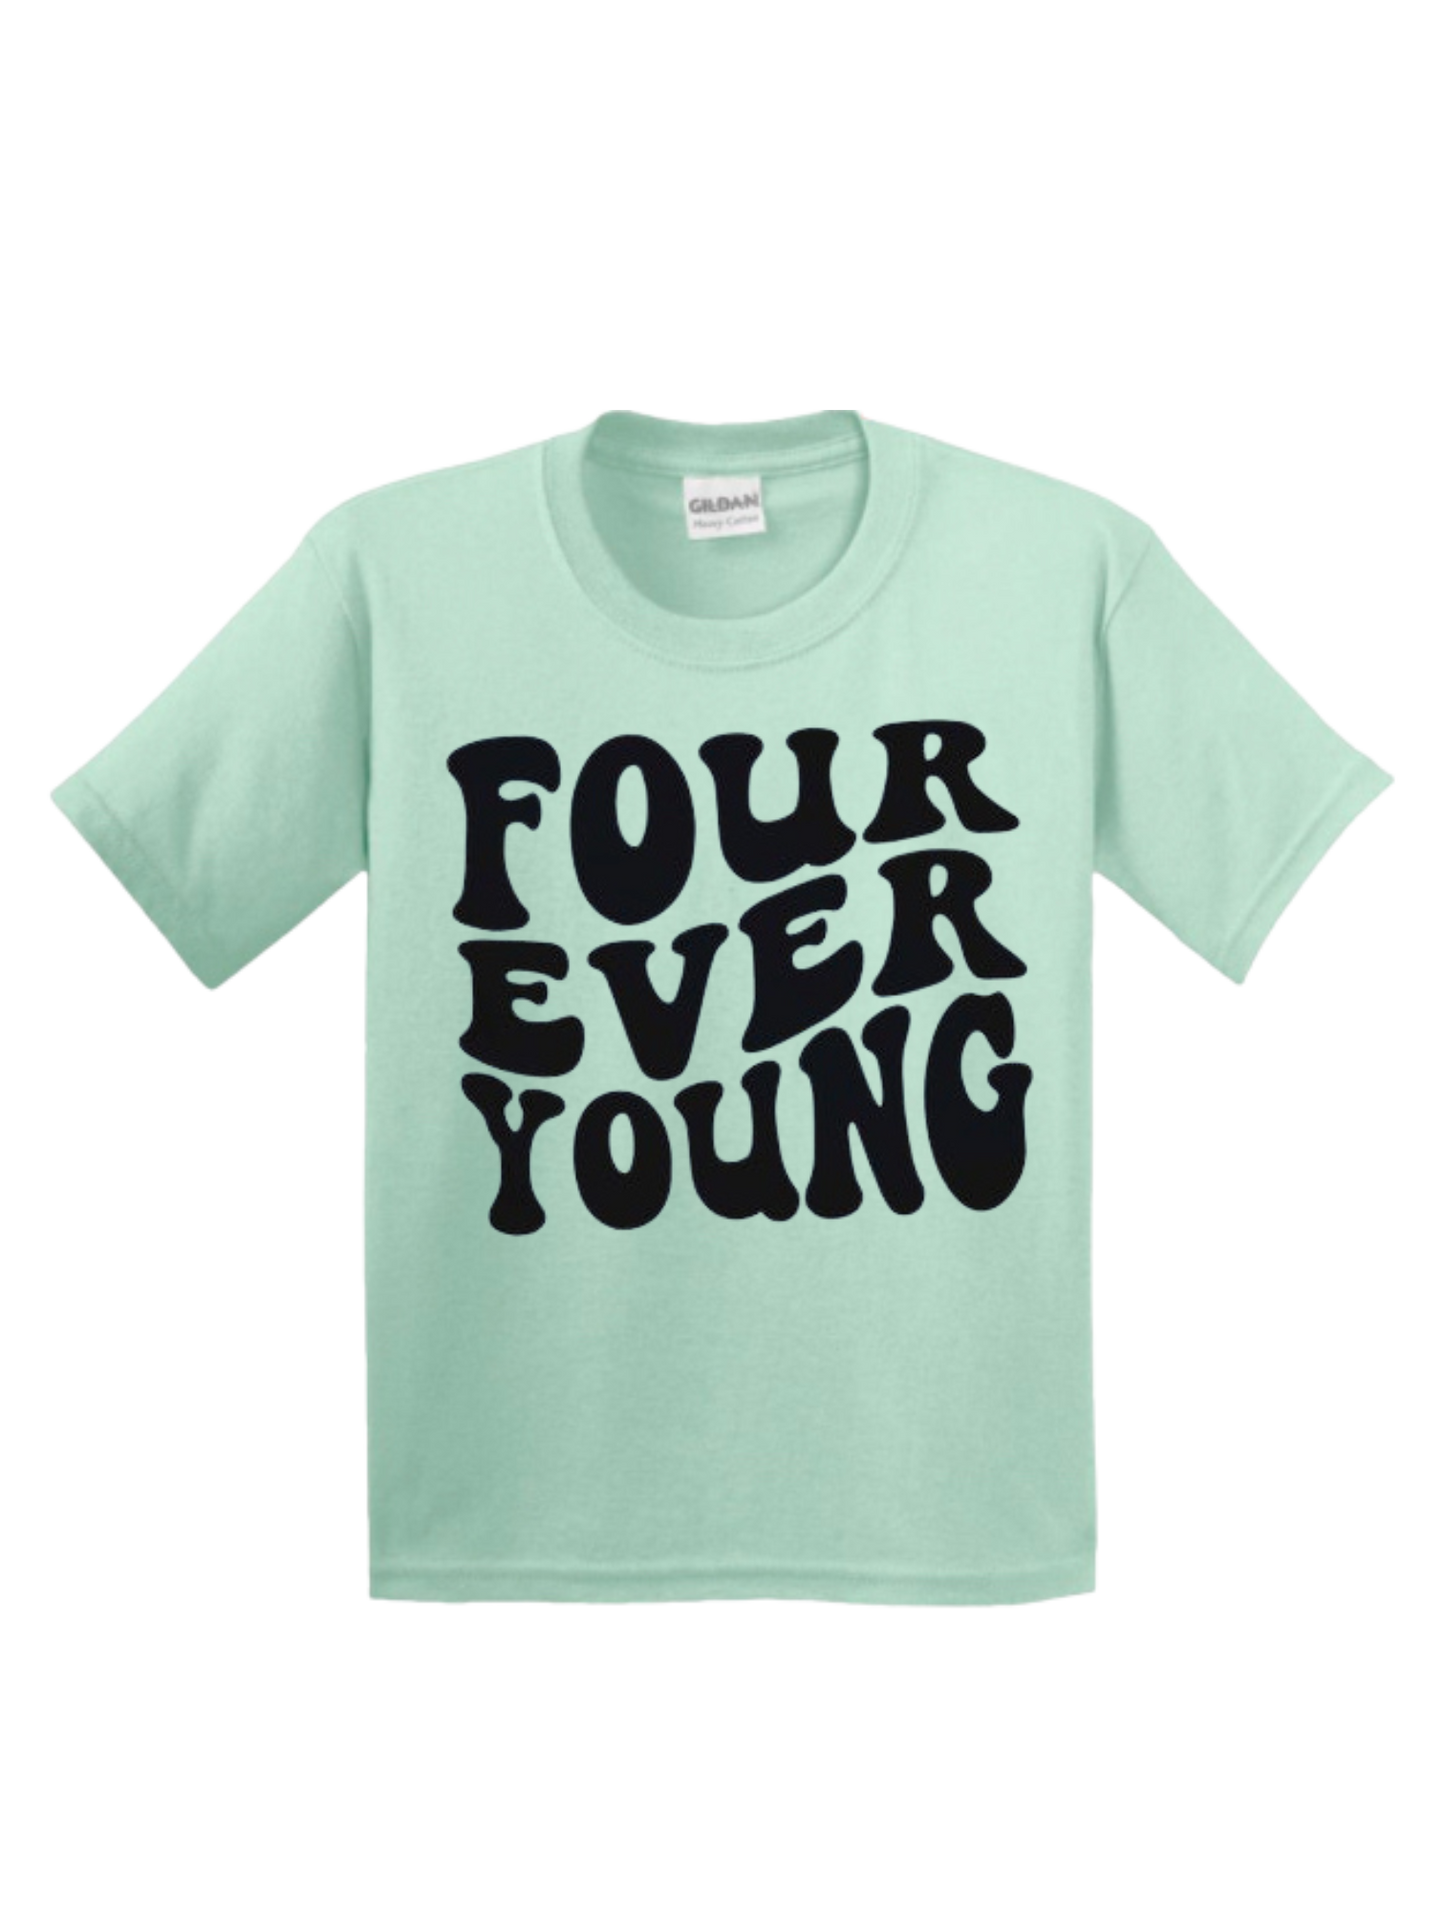 Four Tshirt